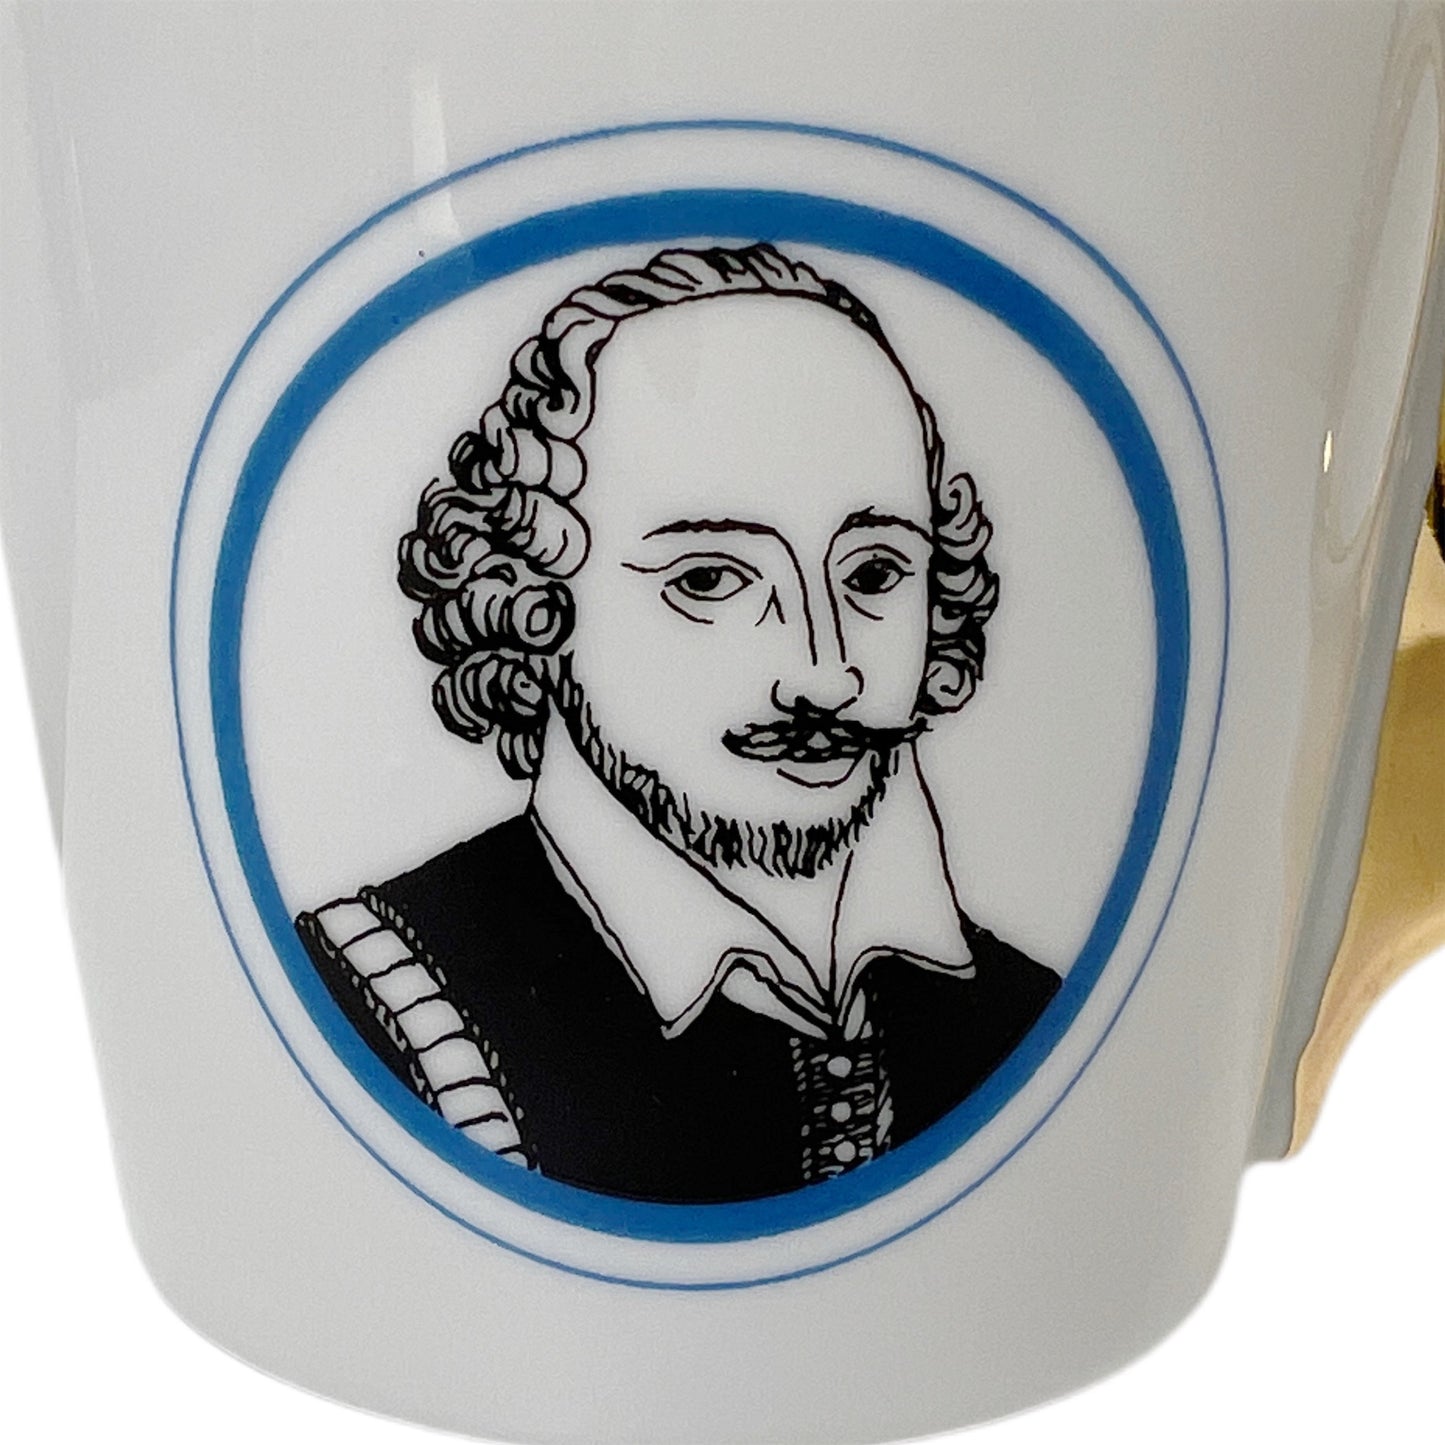 【Kuhn Keramik】 ポートレートマグカップ William Shakespeare